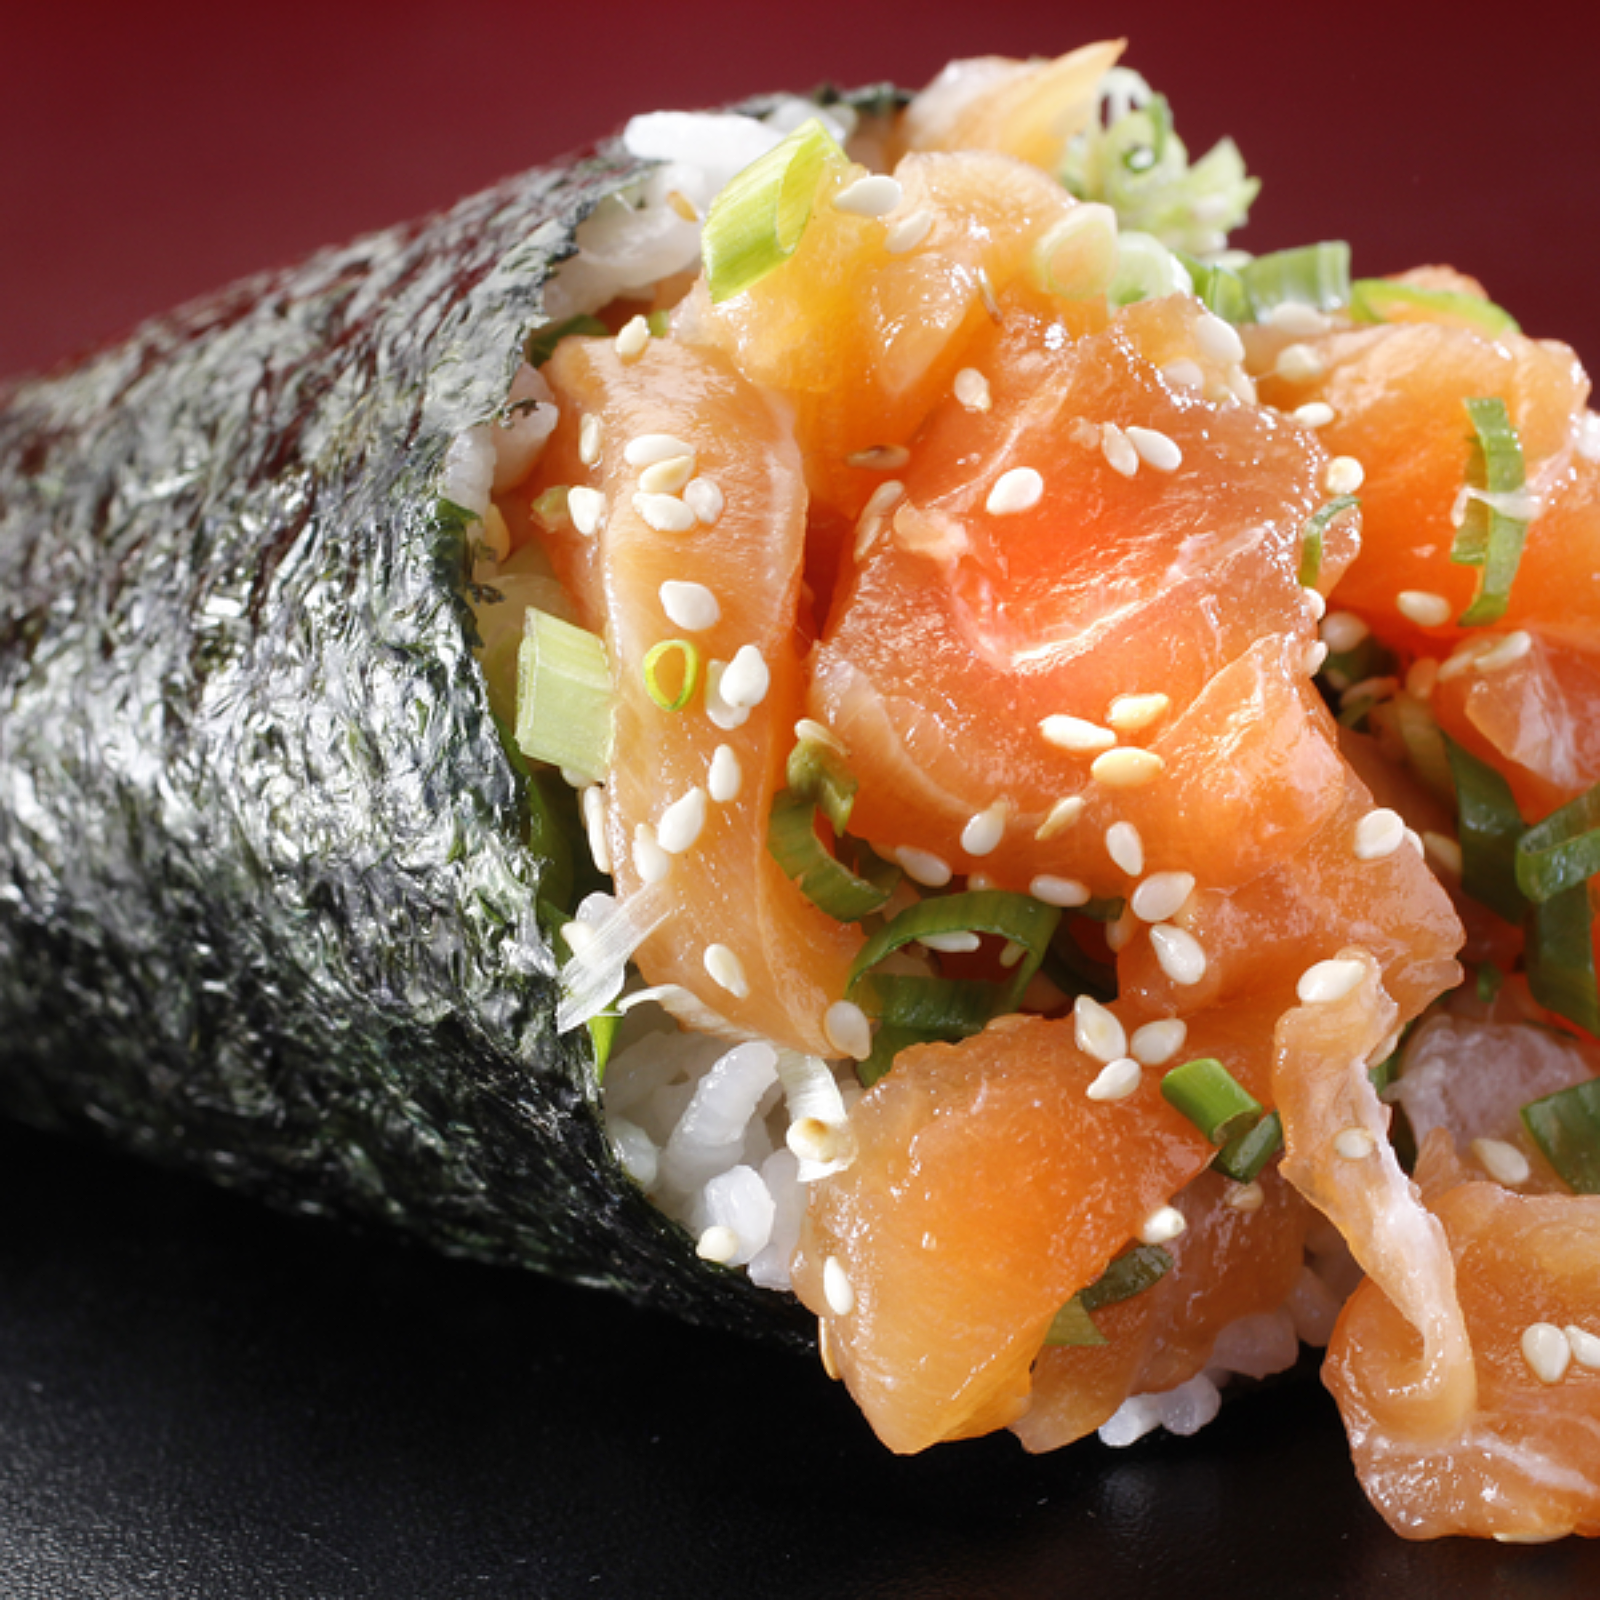 Salmon Sushi Handroll Adobe Stock 79399733 600x600 950dd6f